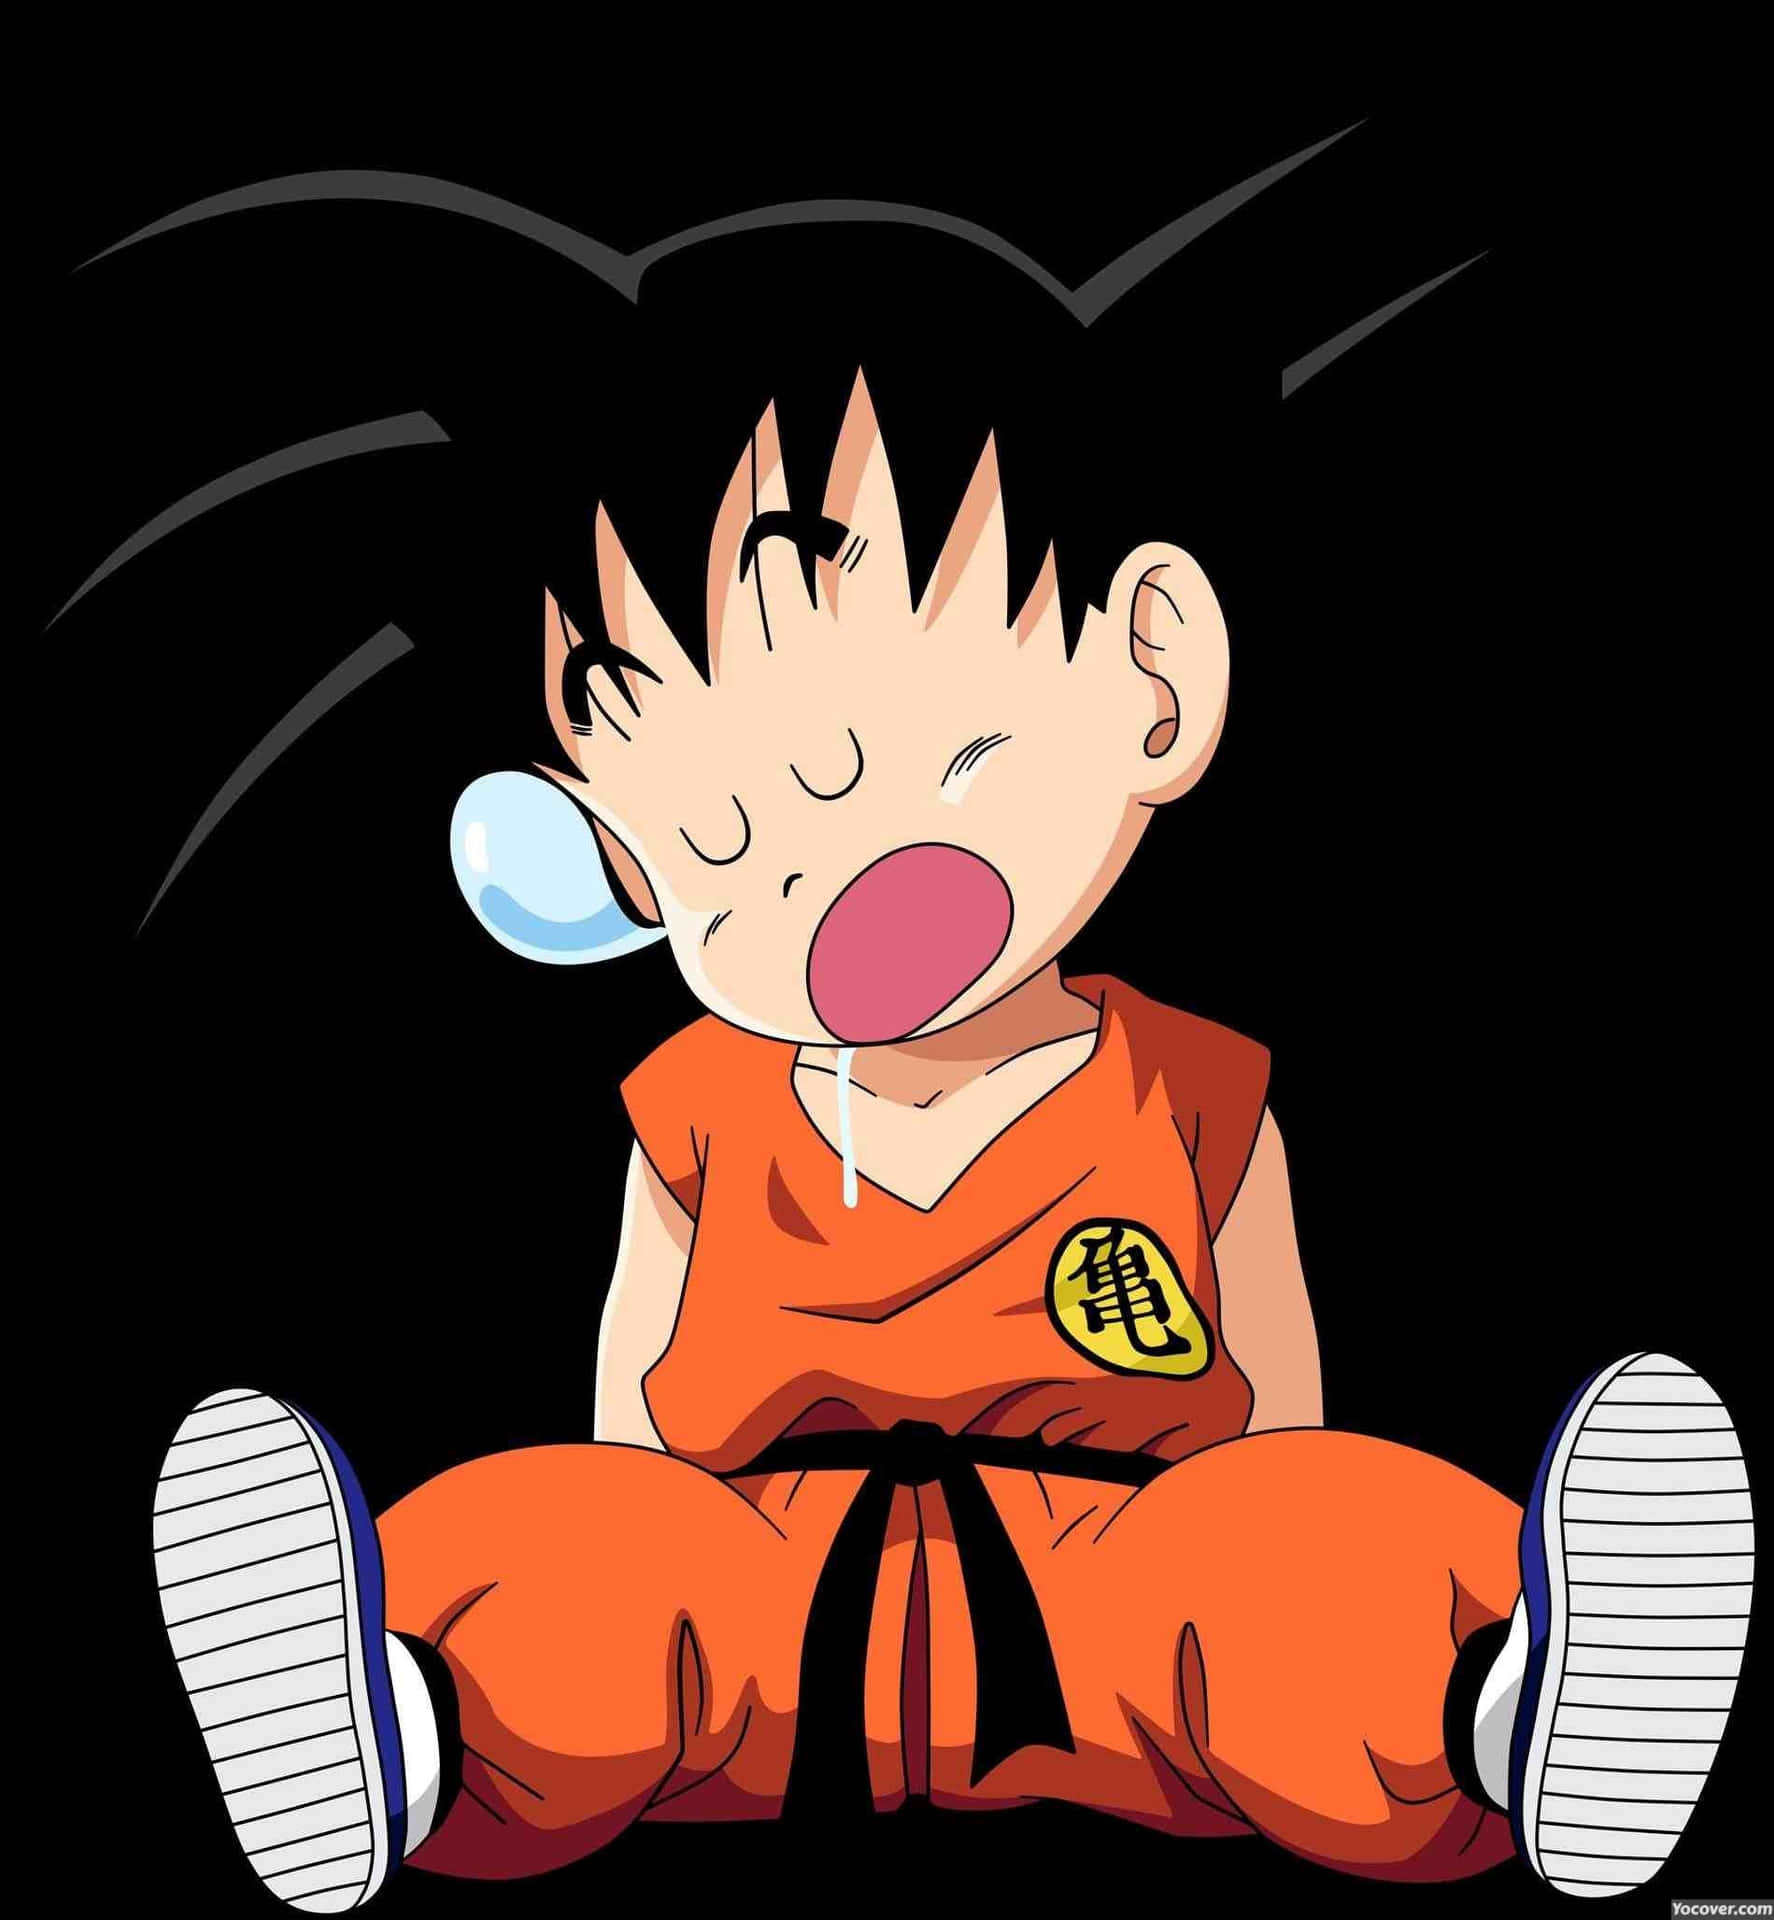 Download Kid Goku Wallpaper Helt Gratis, [100+] Kid Goku Wallpapers ...